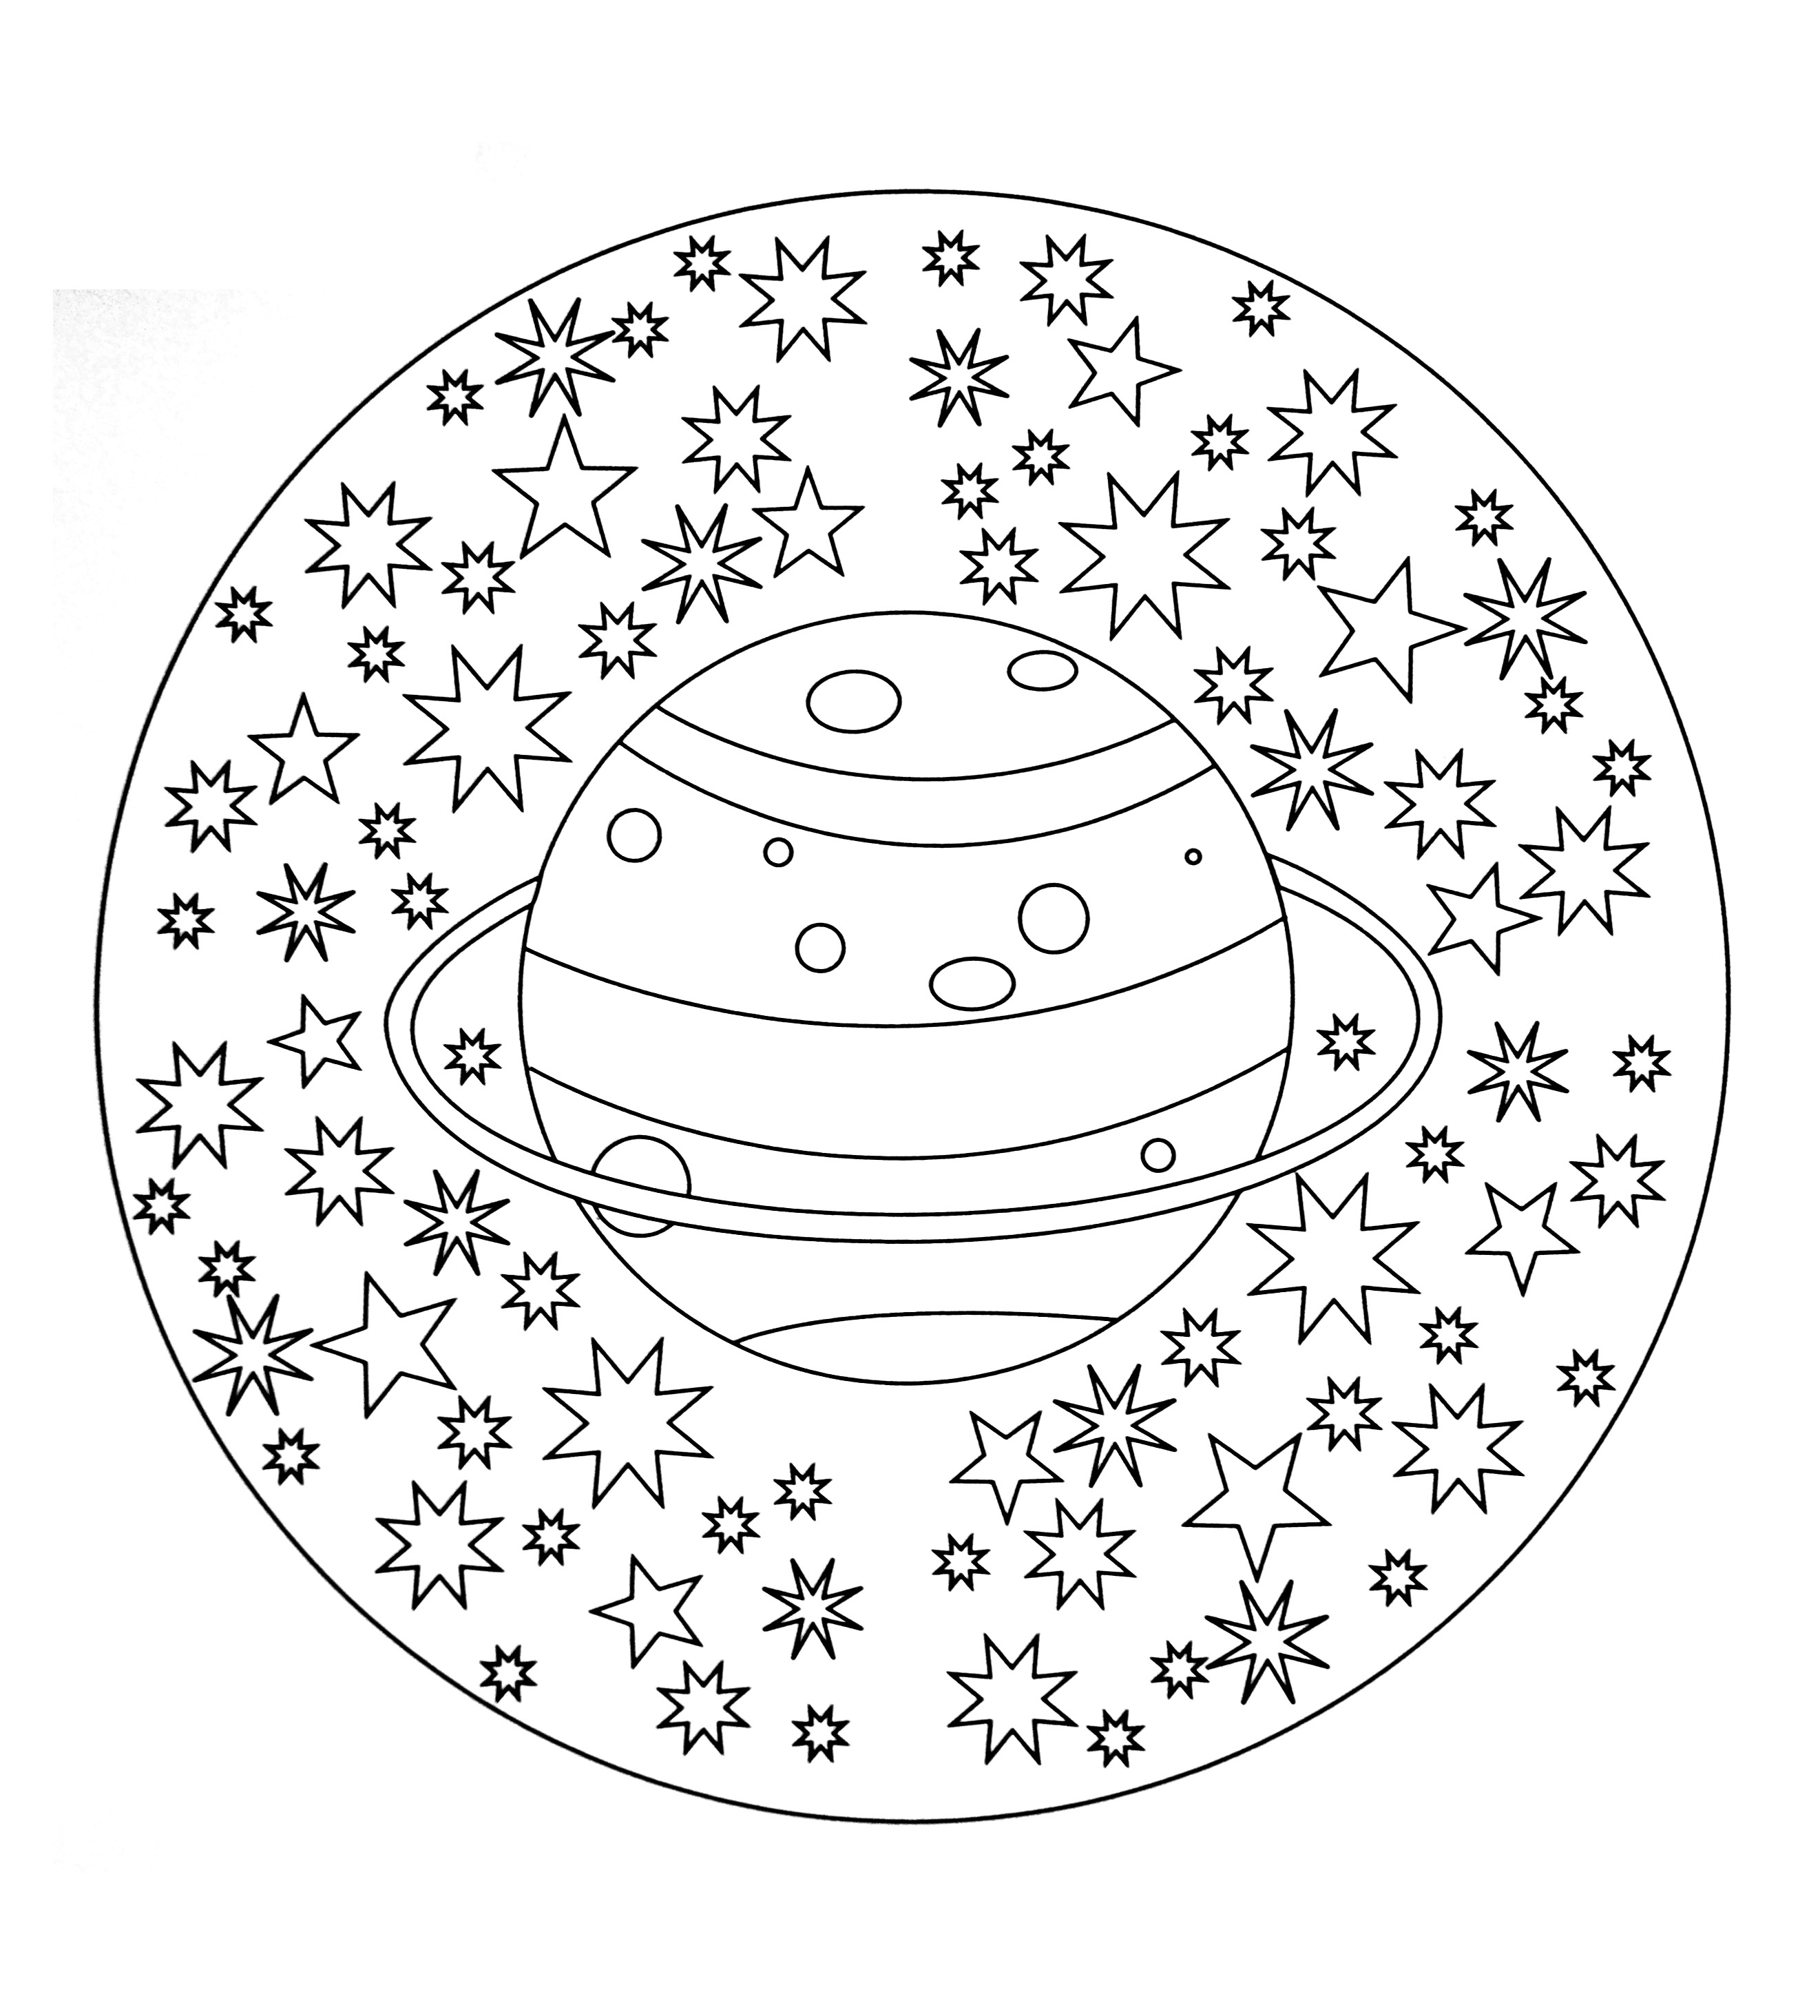 Superbe mandala représentant la planète 'saturne' avec un joli ciel étoilé. Très simple à colorier.